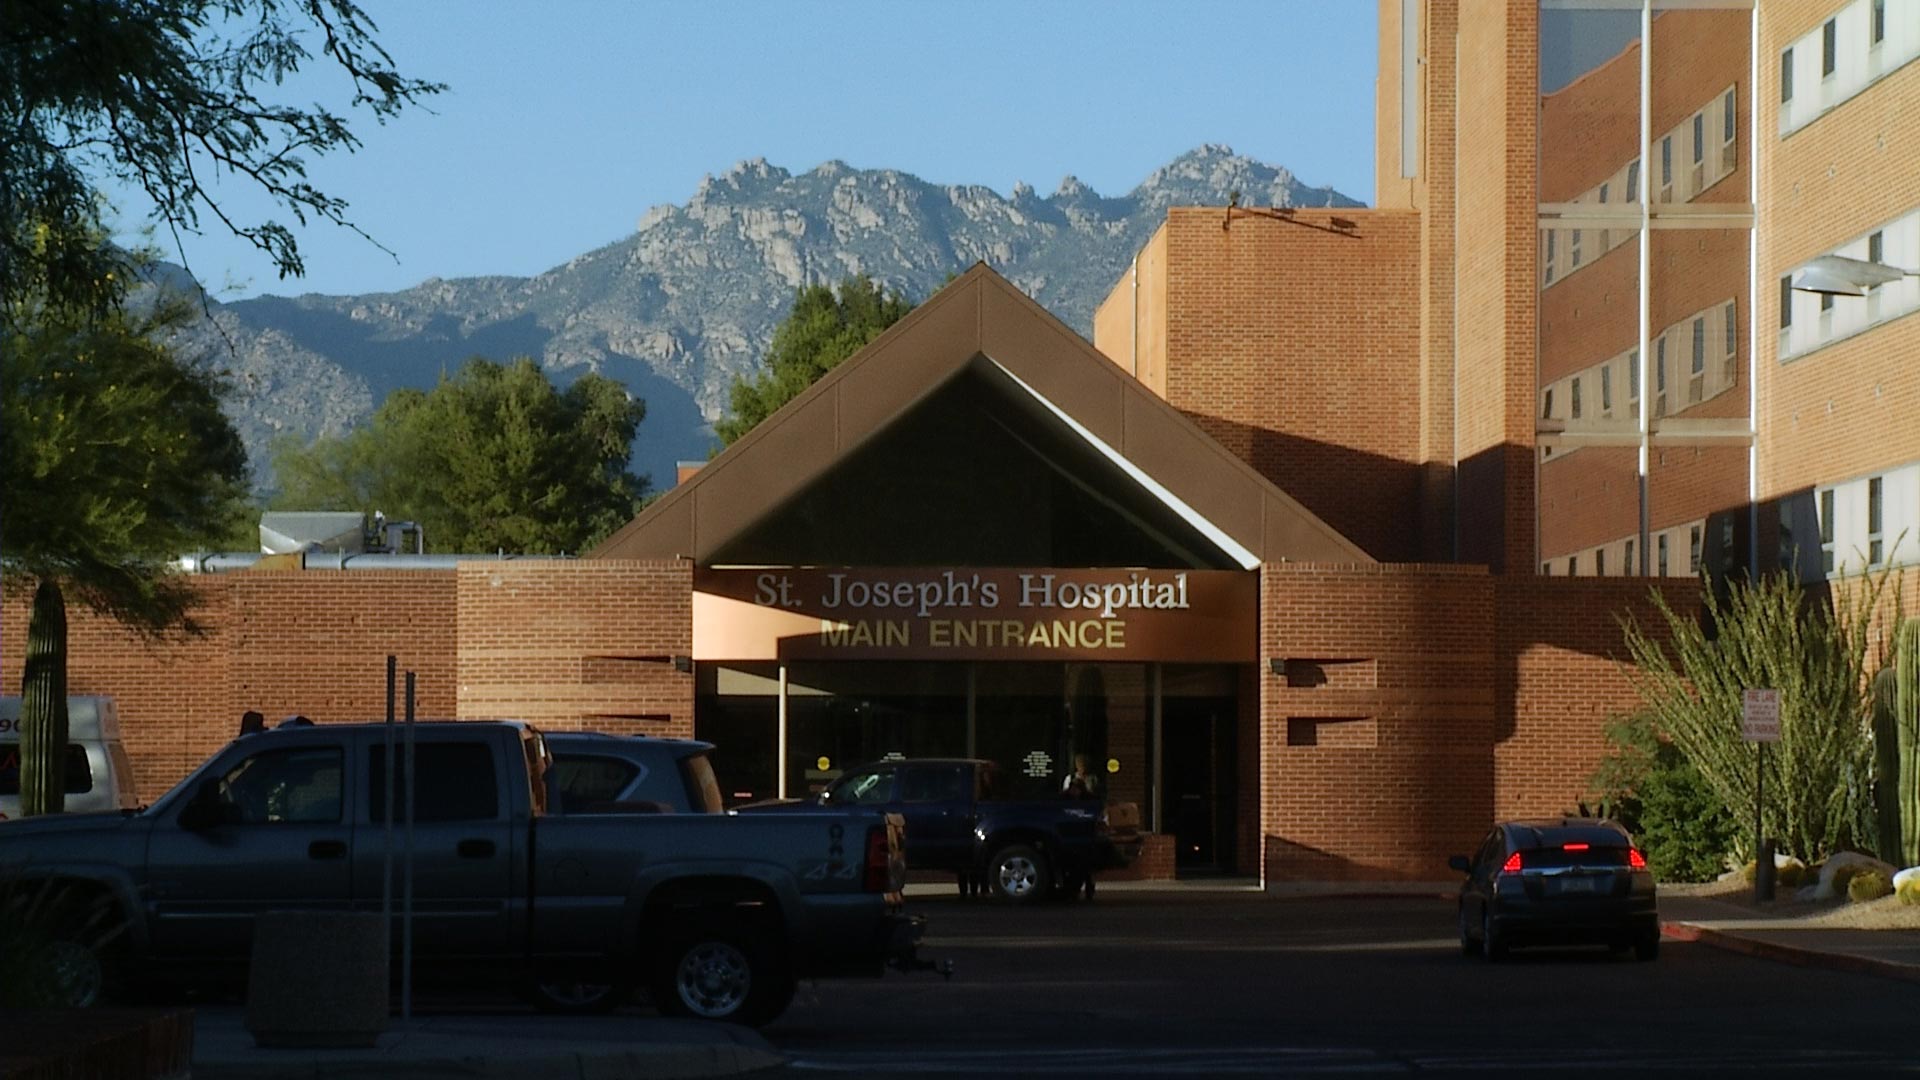 St. Joseph's Hospital in Tucson. 